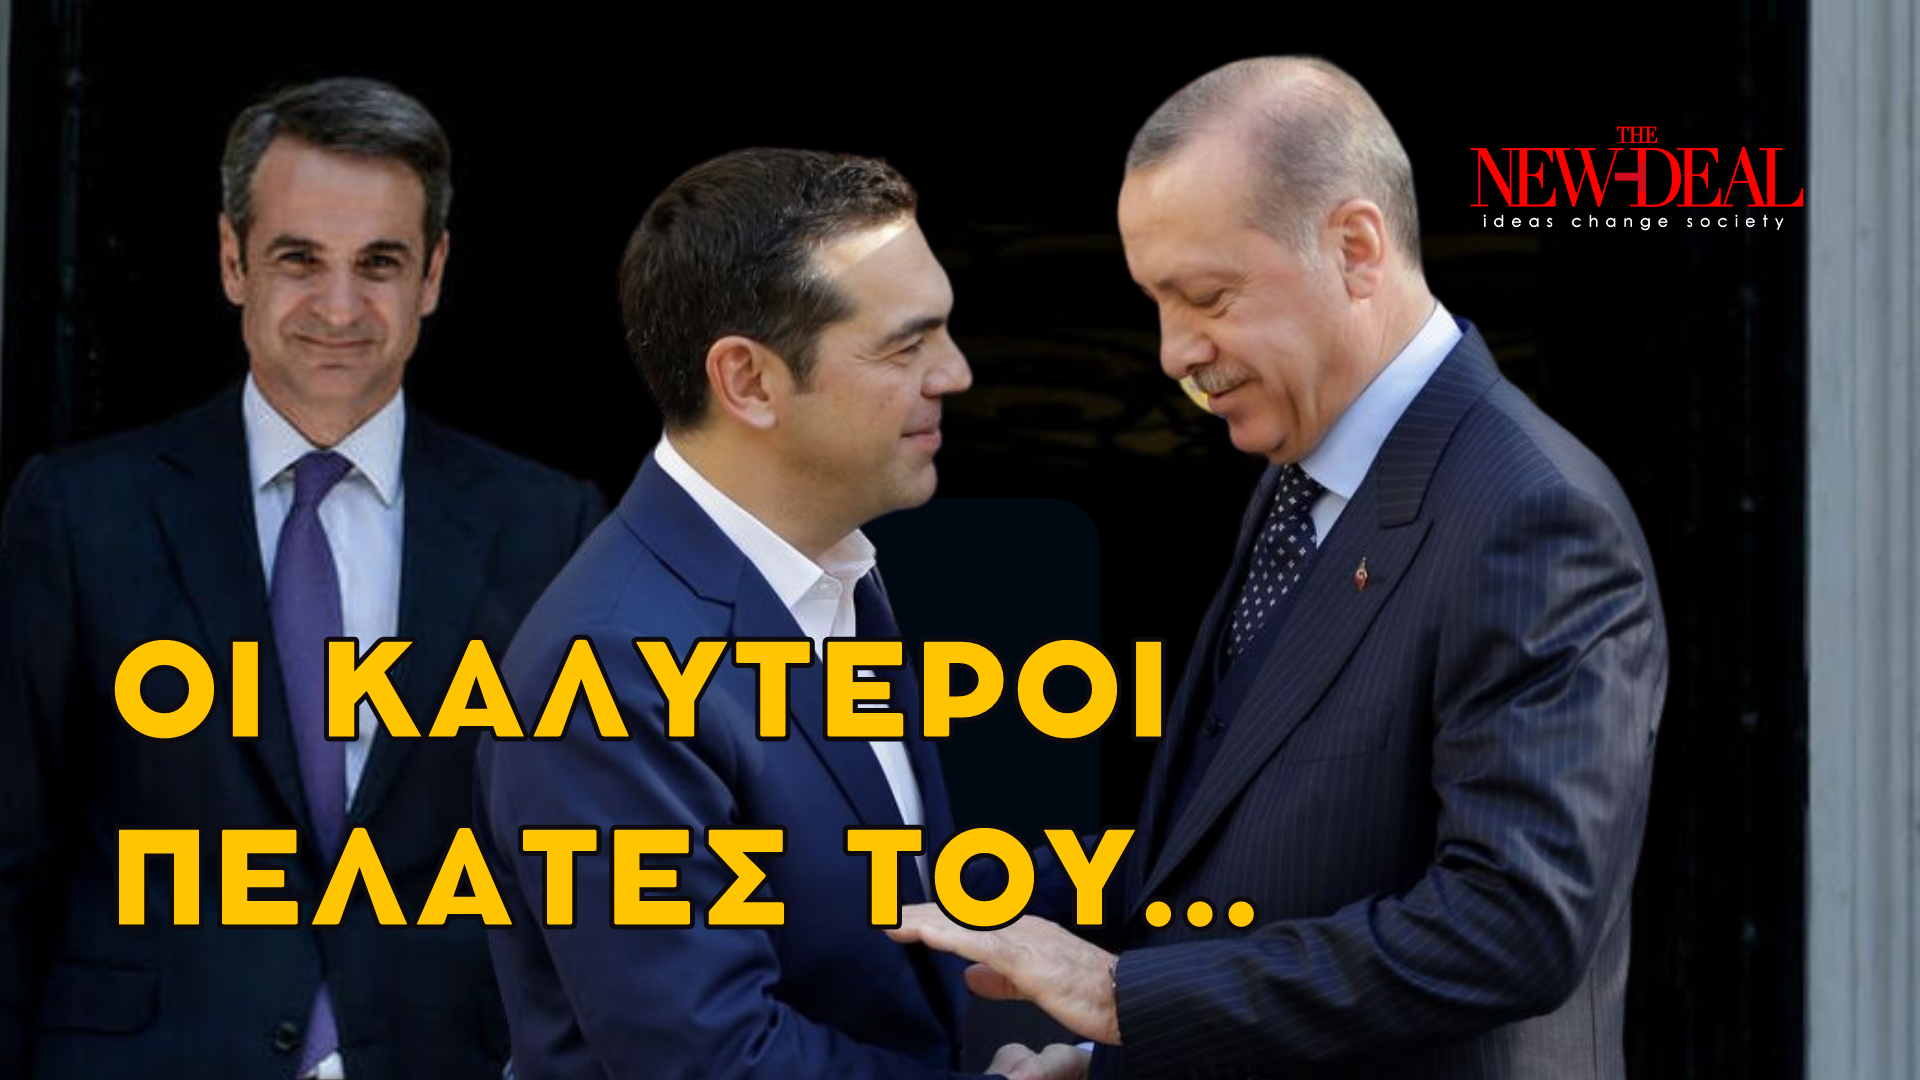 Ο Λουκάς Γεωργιάδης εξηγεί πως ο "δημοκρατοδικτάτορας" Ερντογάν ζημιώνει τον Τσίπρα και γιατί οι δυο τους ωφελούν τον Μητσοτάκη! new deal